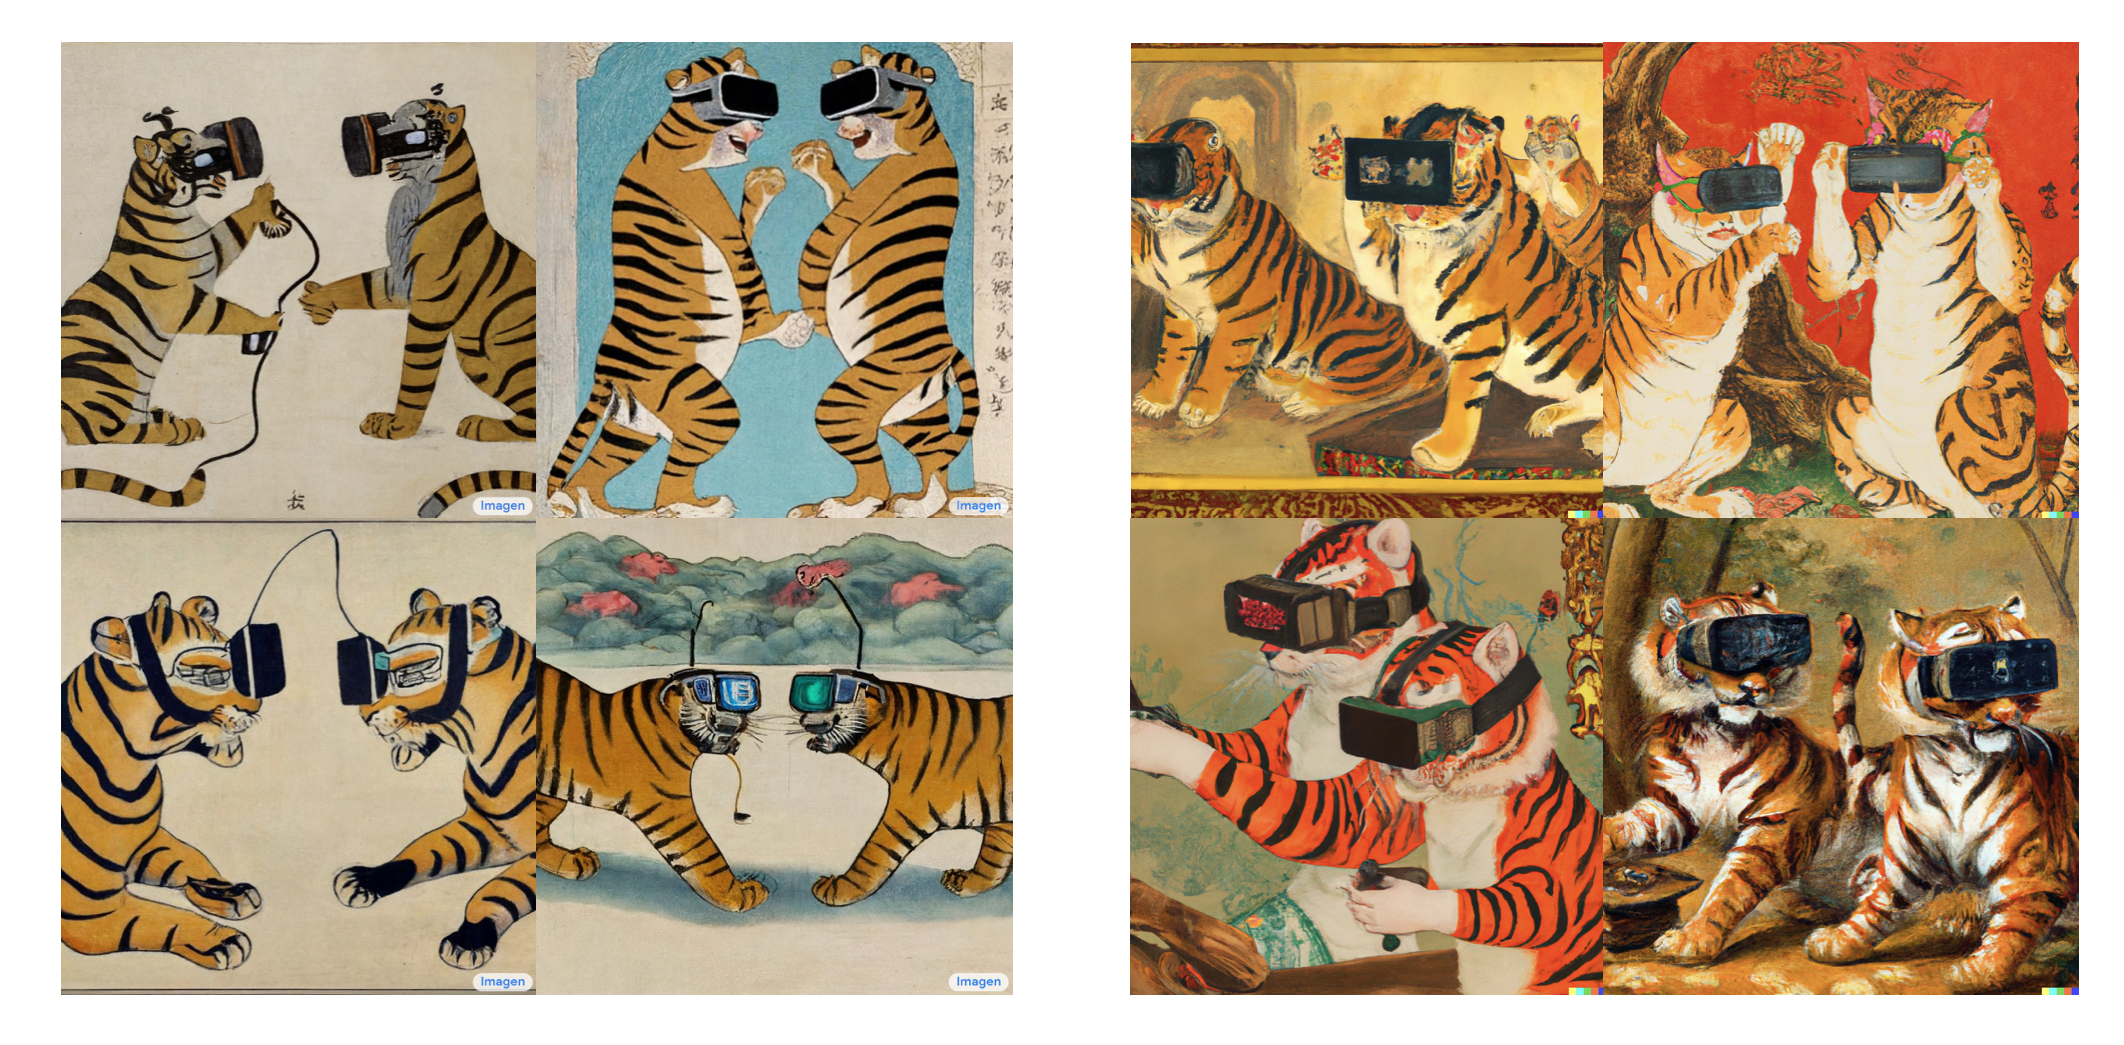 Запрос: “Oriental painting of tigers wearing VR headsets during the Song dynasty” (“Ориентальная картина с тиграми в очках виртуальной реальности времен династии Сун”), слева Imagen, справа – DALL-E 2
Источник:  https://twitter.com/hardmaru/status/1532757753797586944